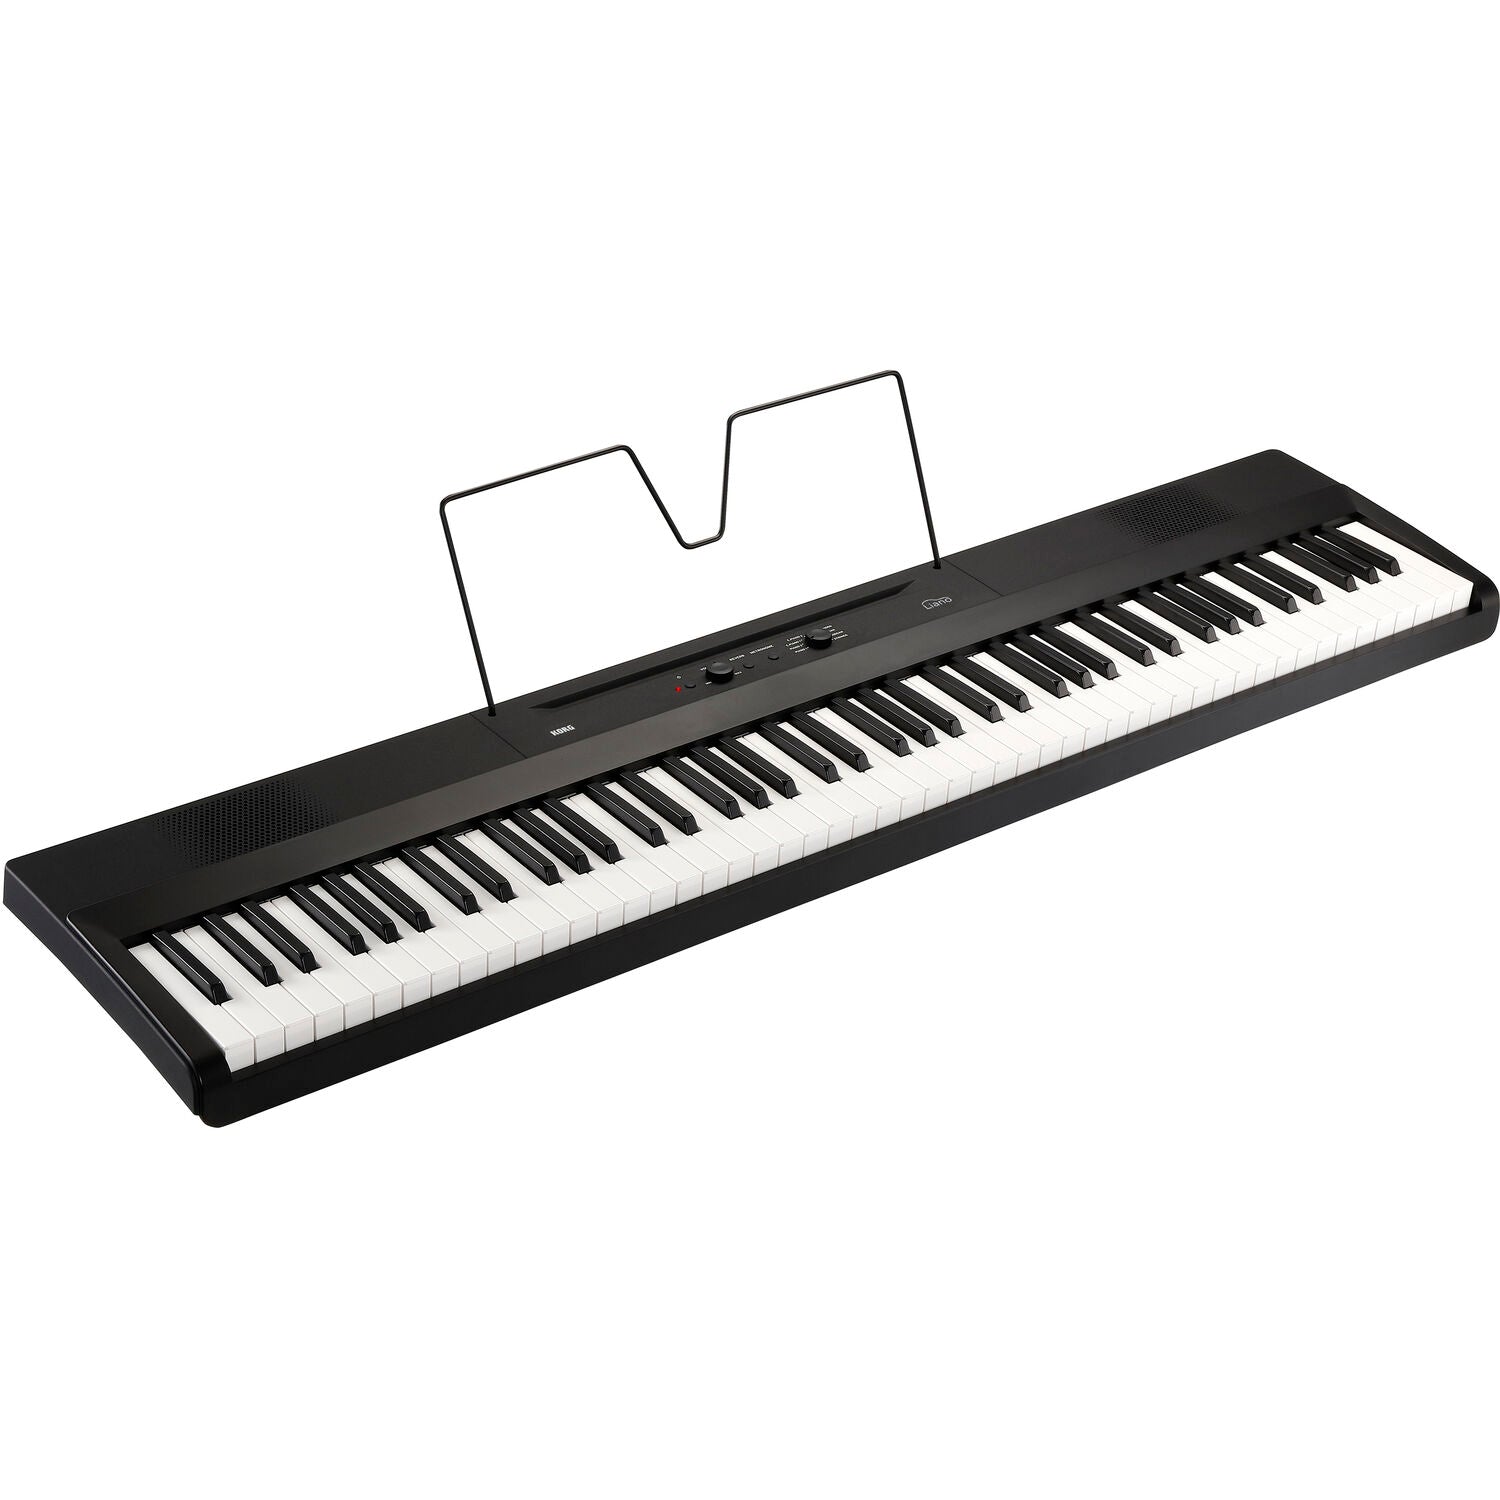 Đàn Piano Điện Korg Liano L1